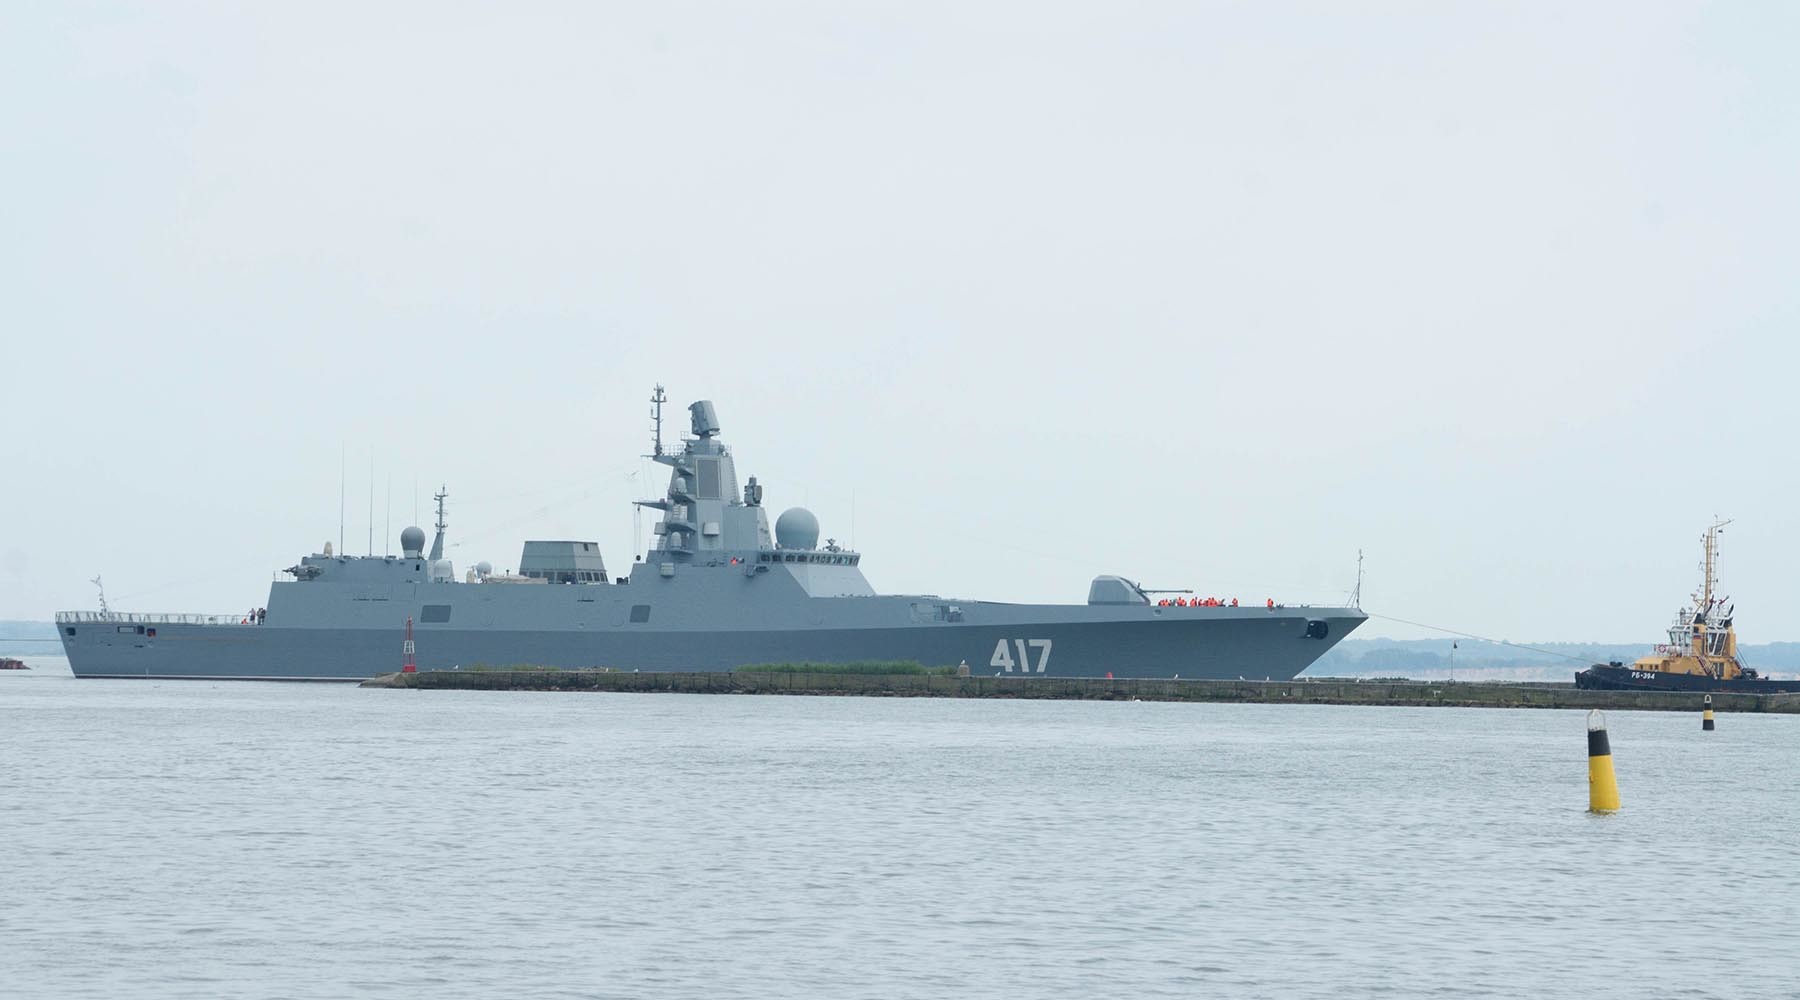 РФ накаляет обстановку у берегов Украины: в Азовское море переброшены боевые корабли из Сирии - СМИ